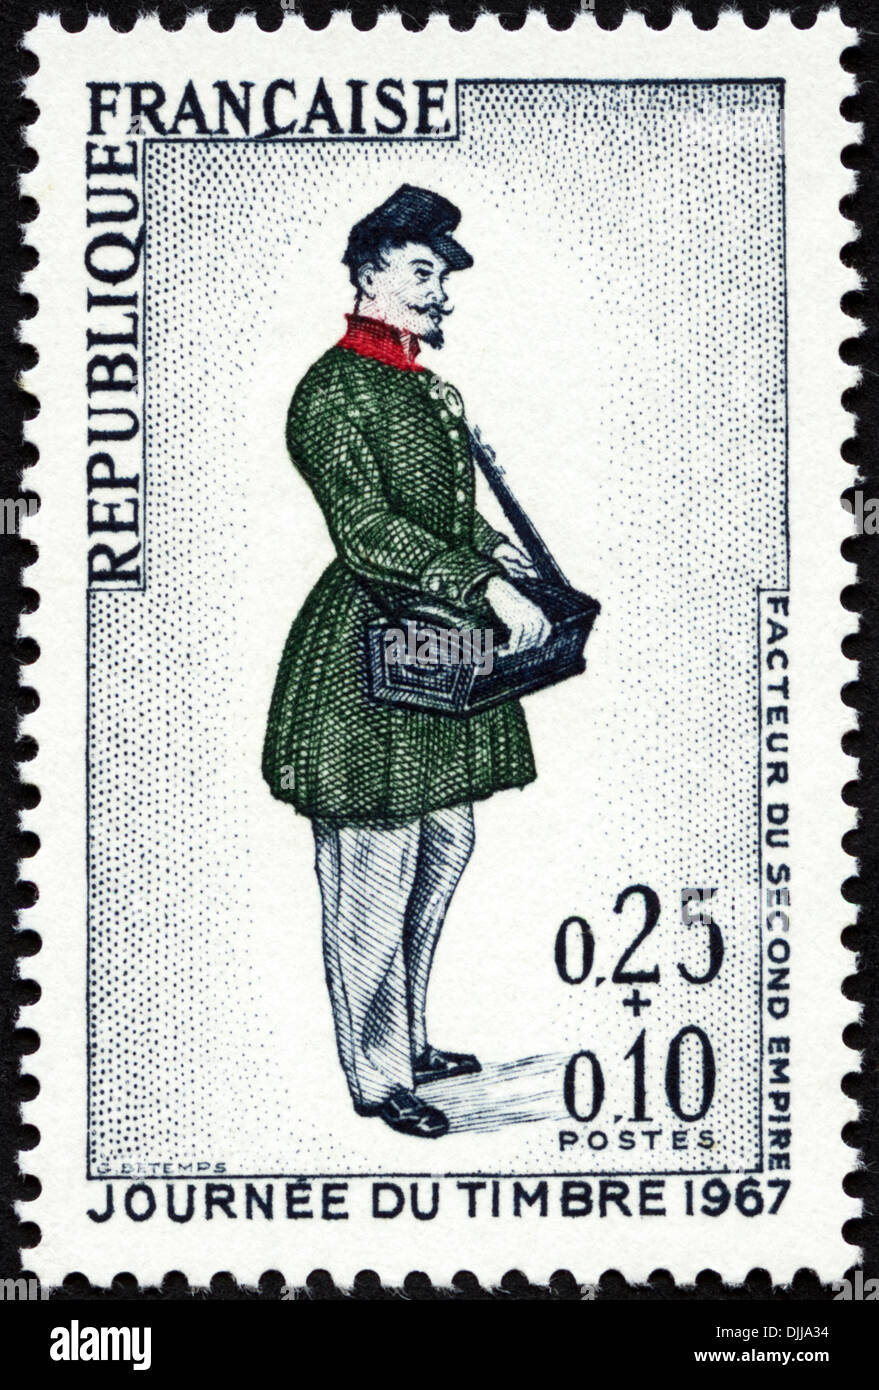 Francobollo Repubblica francese 0,25+0,10 con lettera vittoriano portante emessa 1967 Foto Stock